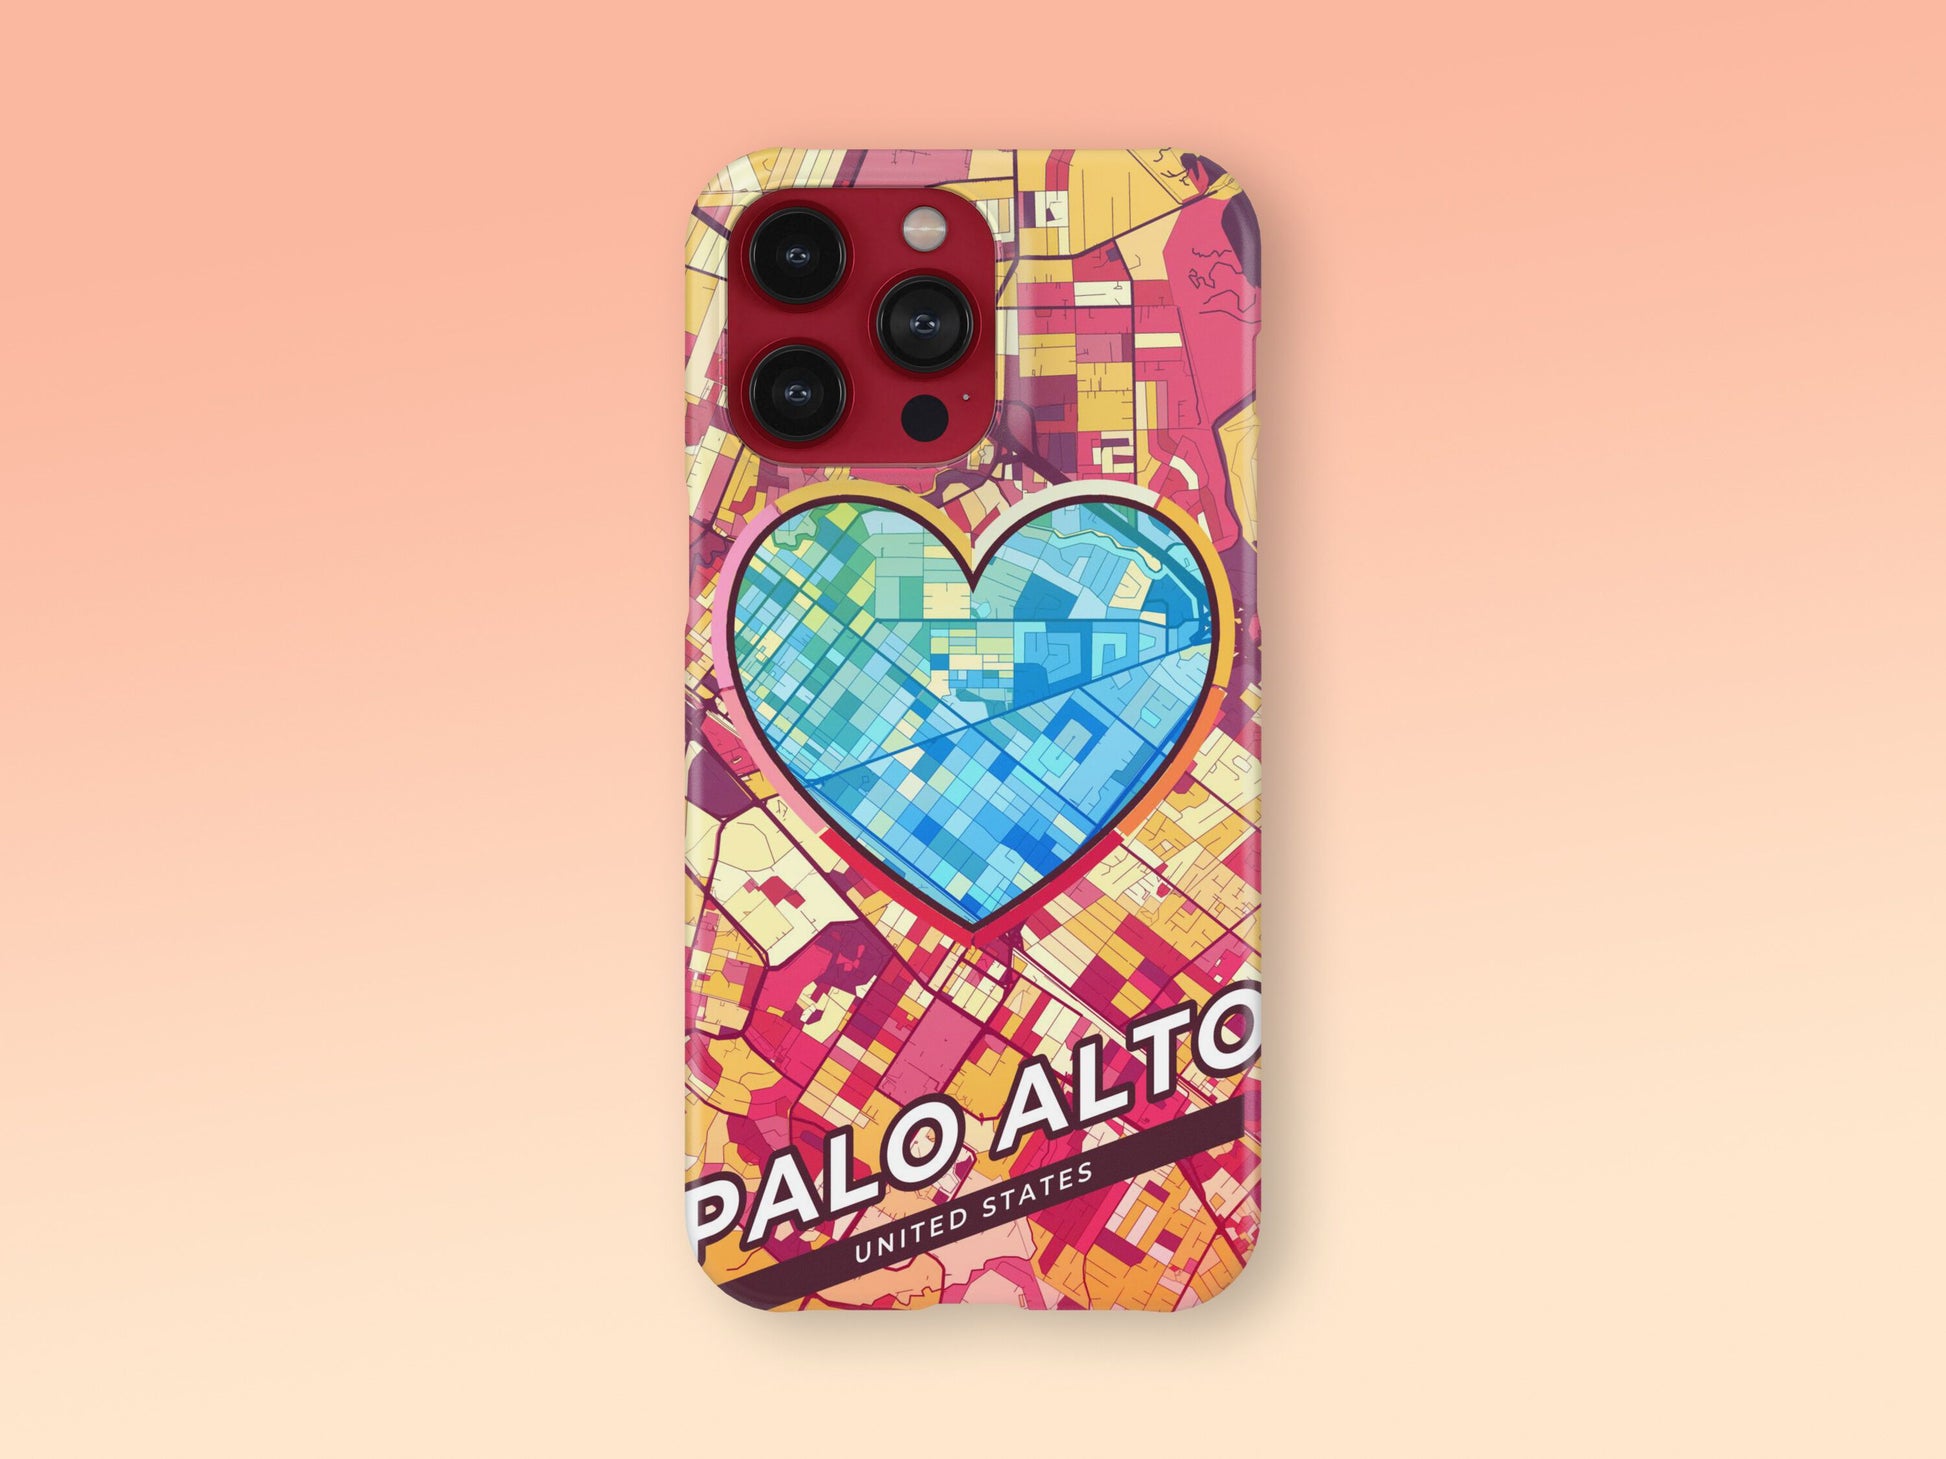 Palo Alto California slim phone case with colorful icon 2